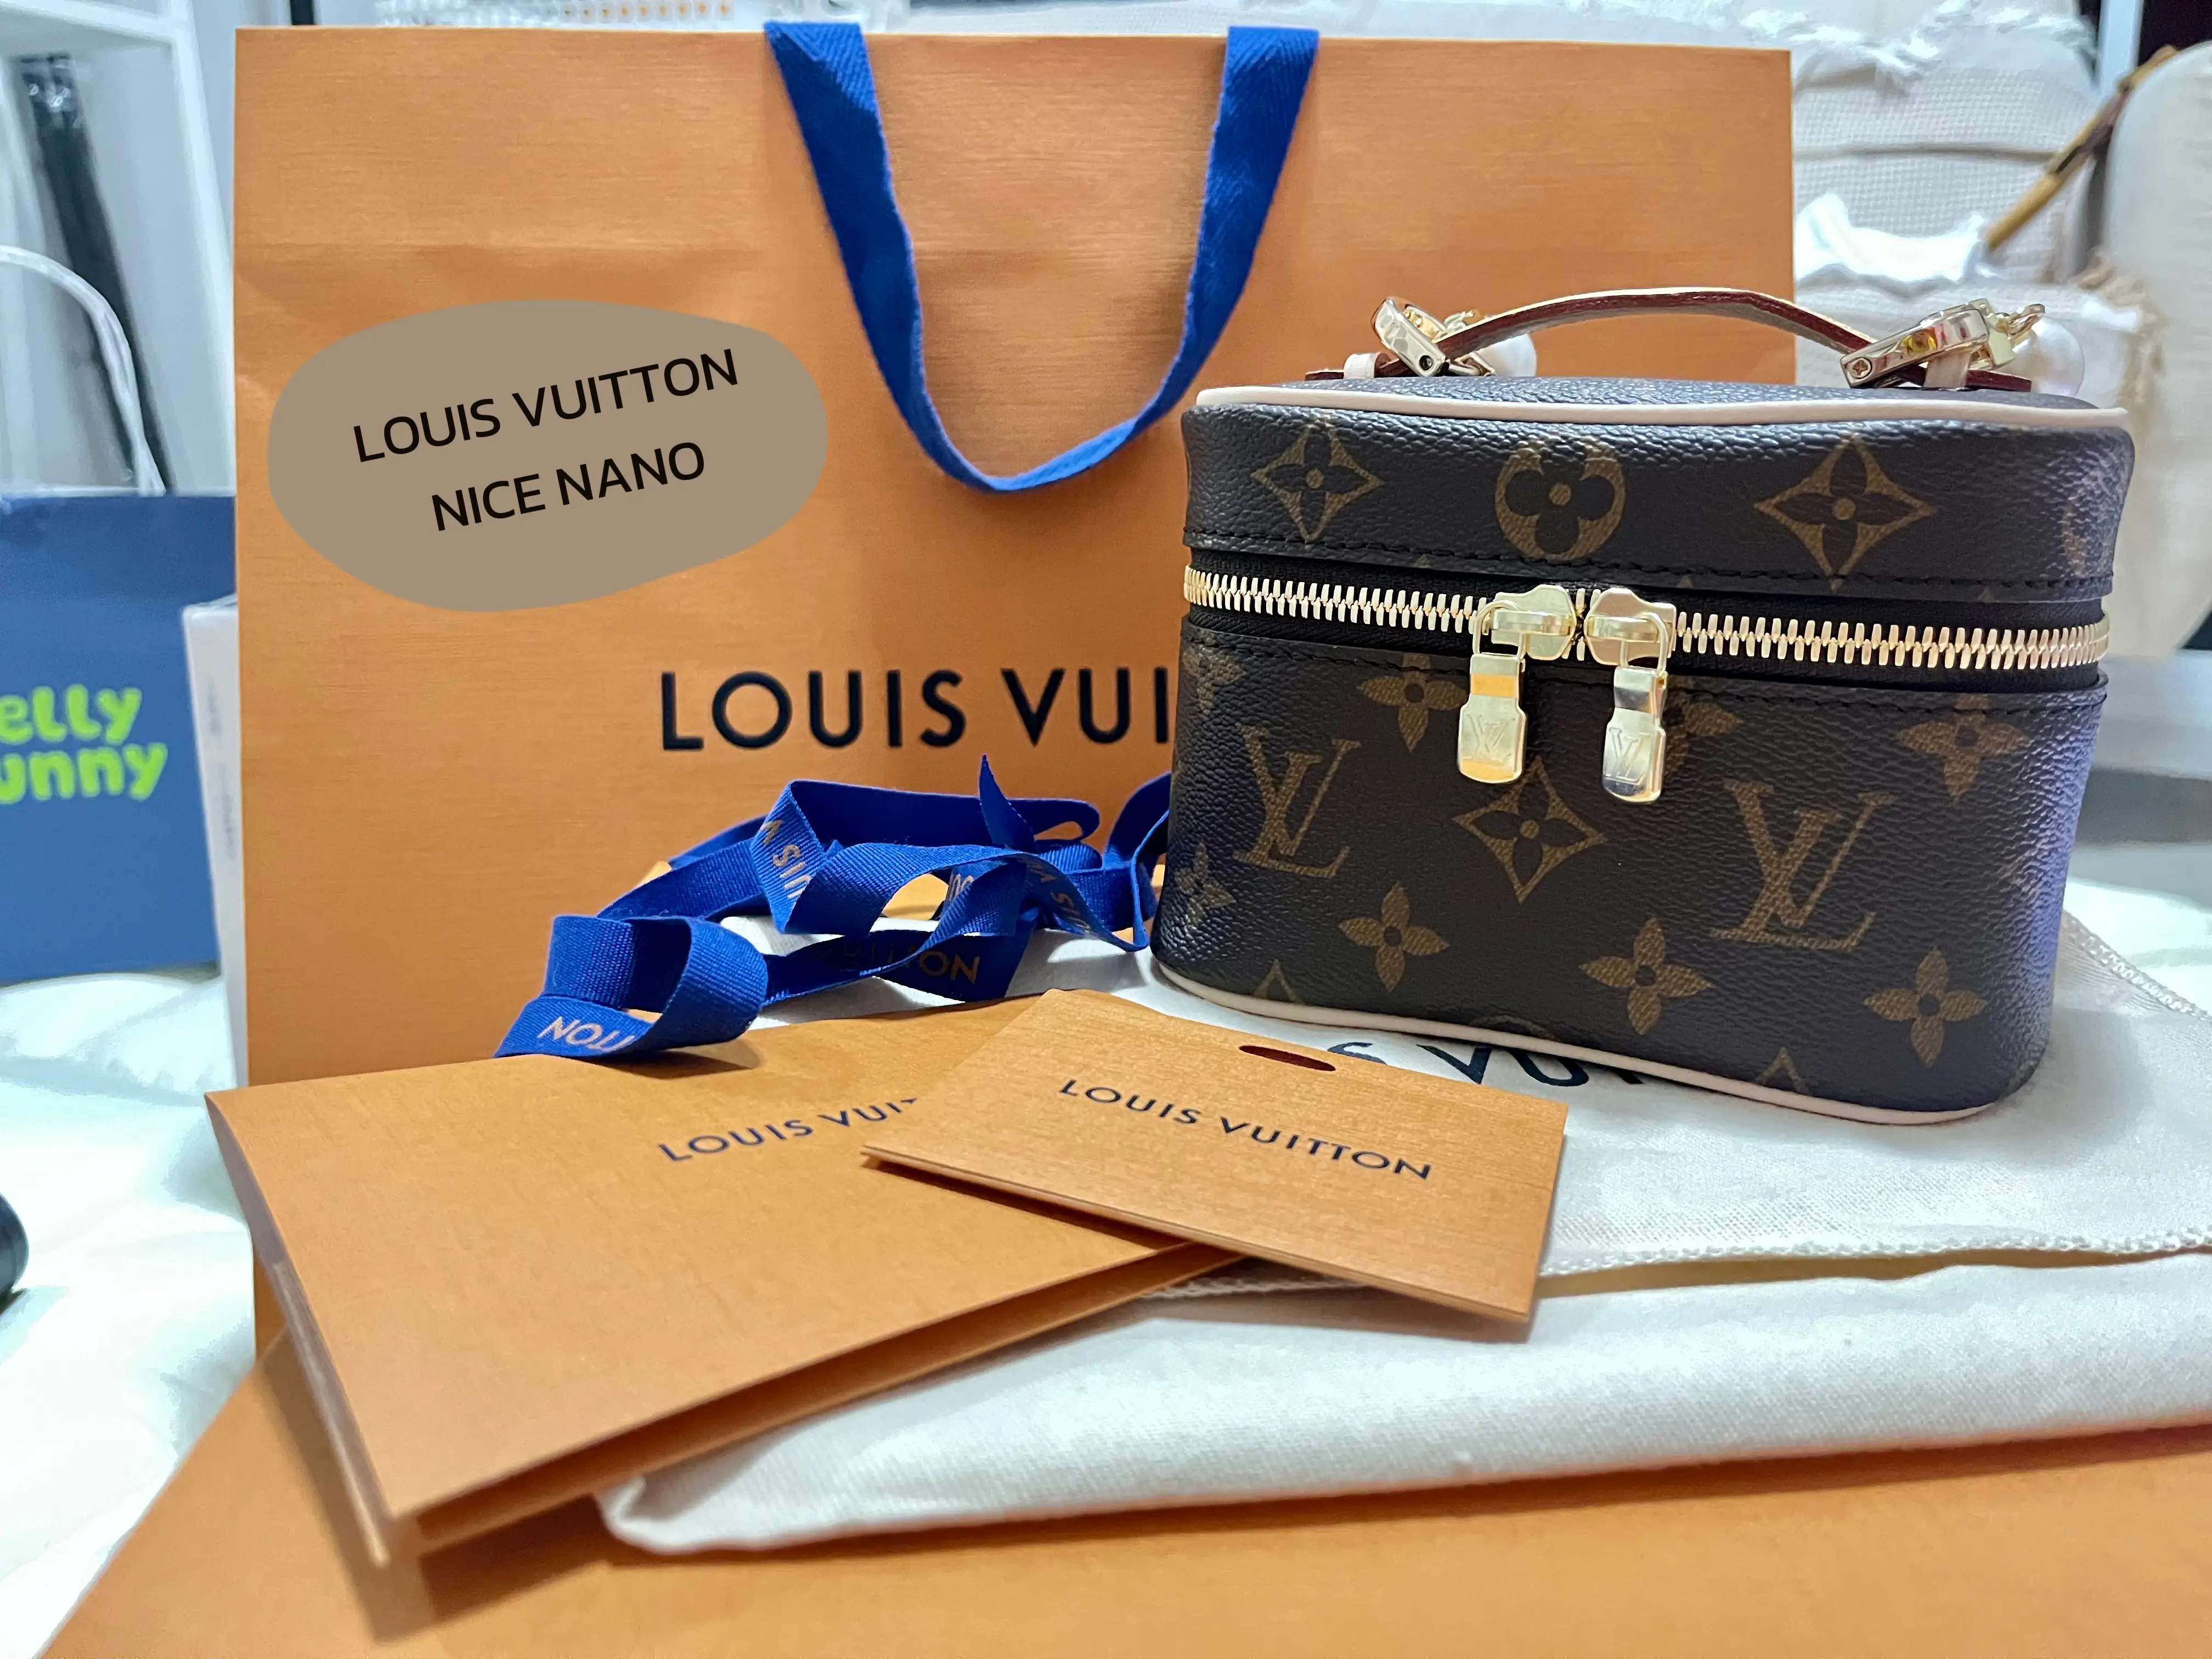 UNBOXING Louis Vuitton petit noe  Comparison noe vs petit noe 